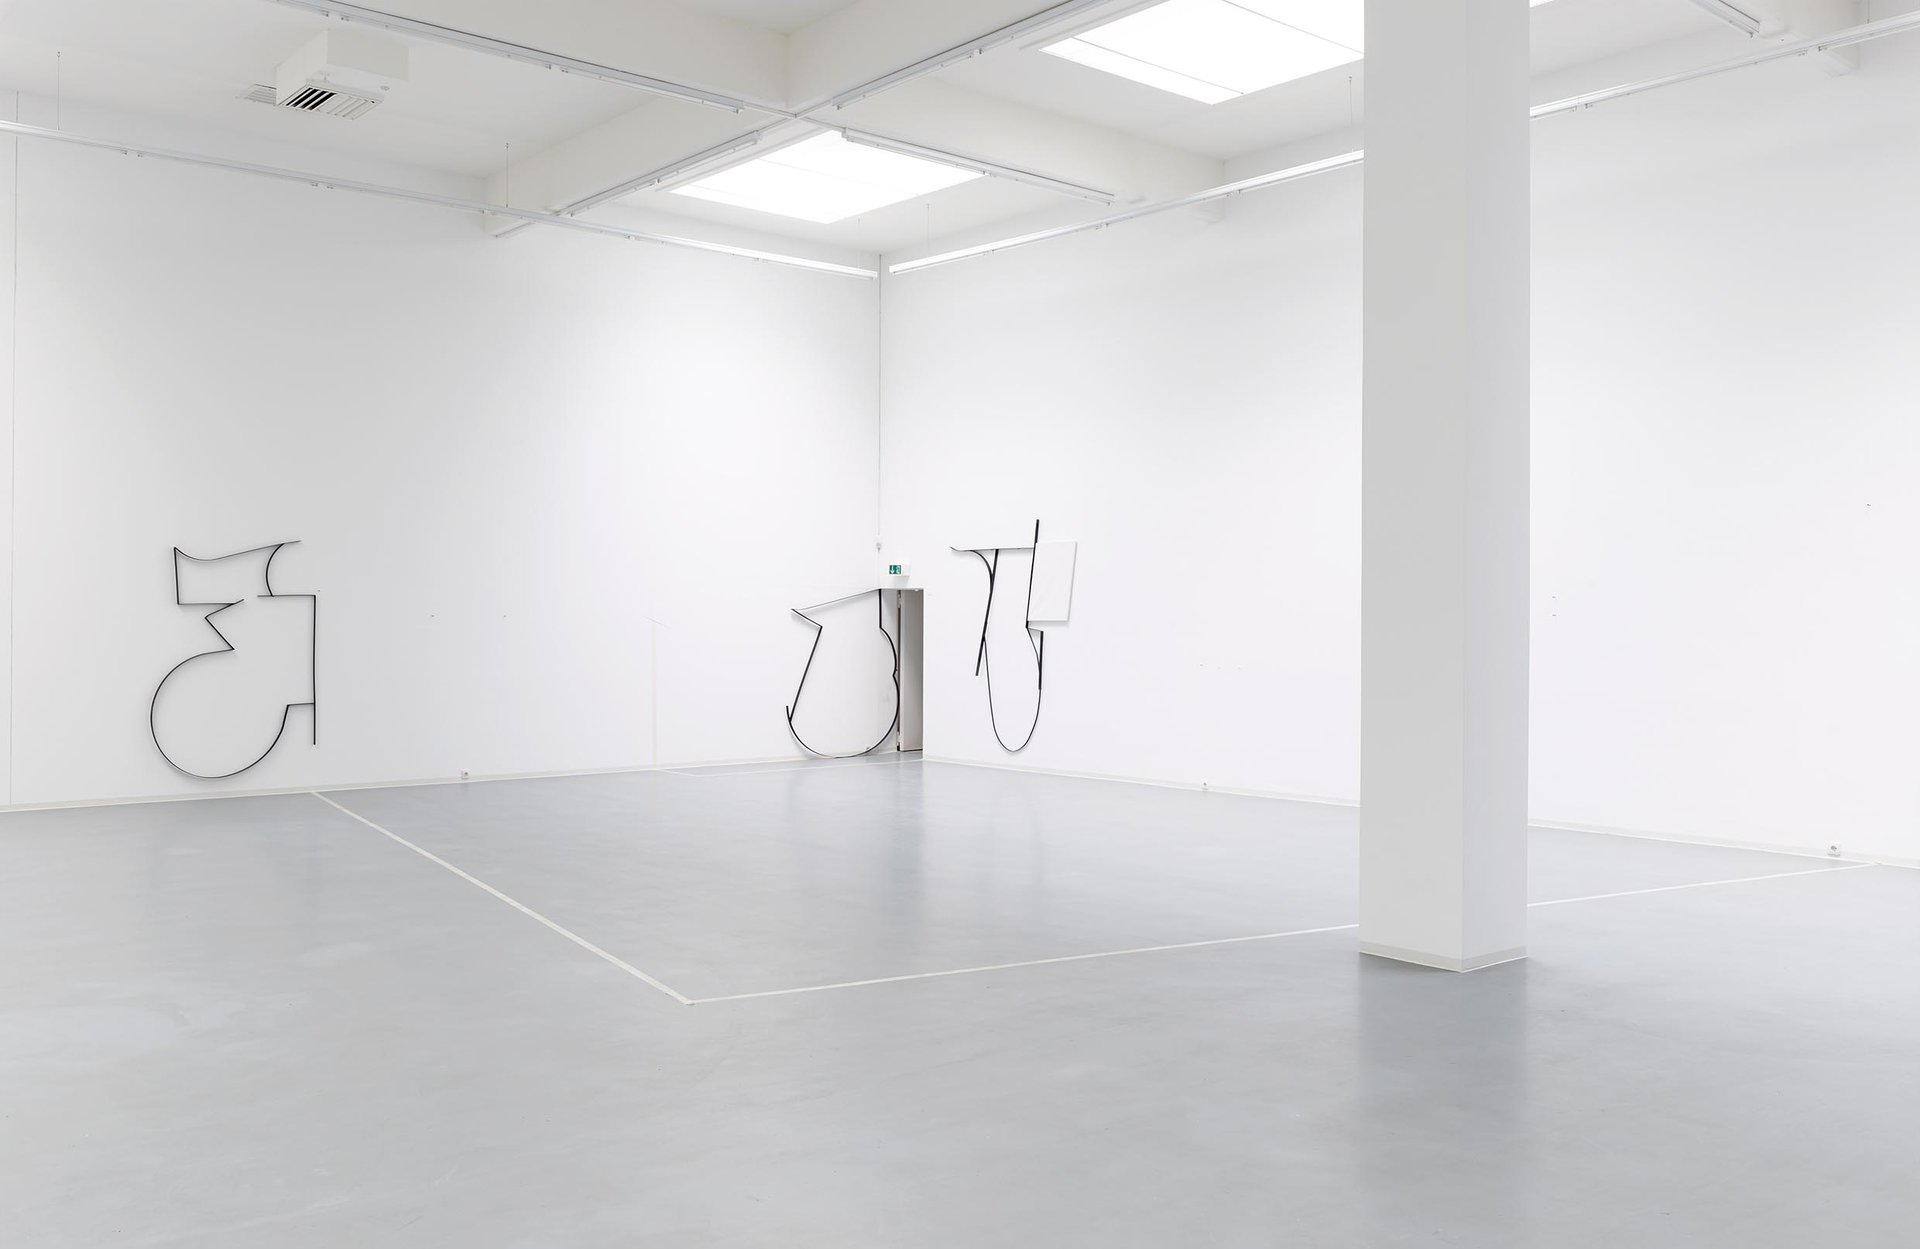 Jonathan Binet, Installationsansicht, 2015, Bonner Kunstverein, Courtesy der Künstler und Gaudel de Stampa, Paris. Photo: Simon Vogel